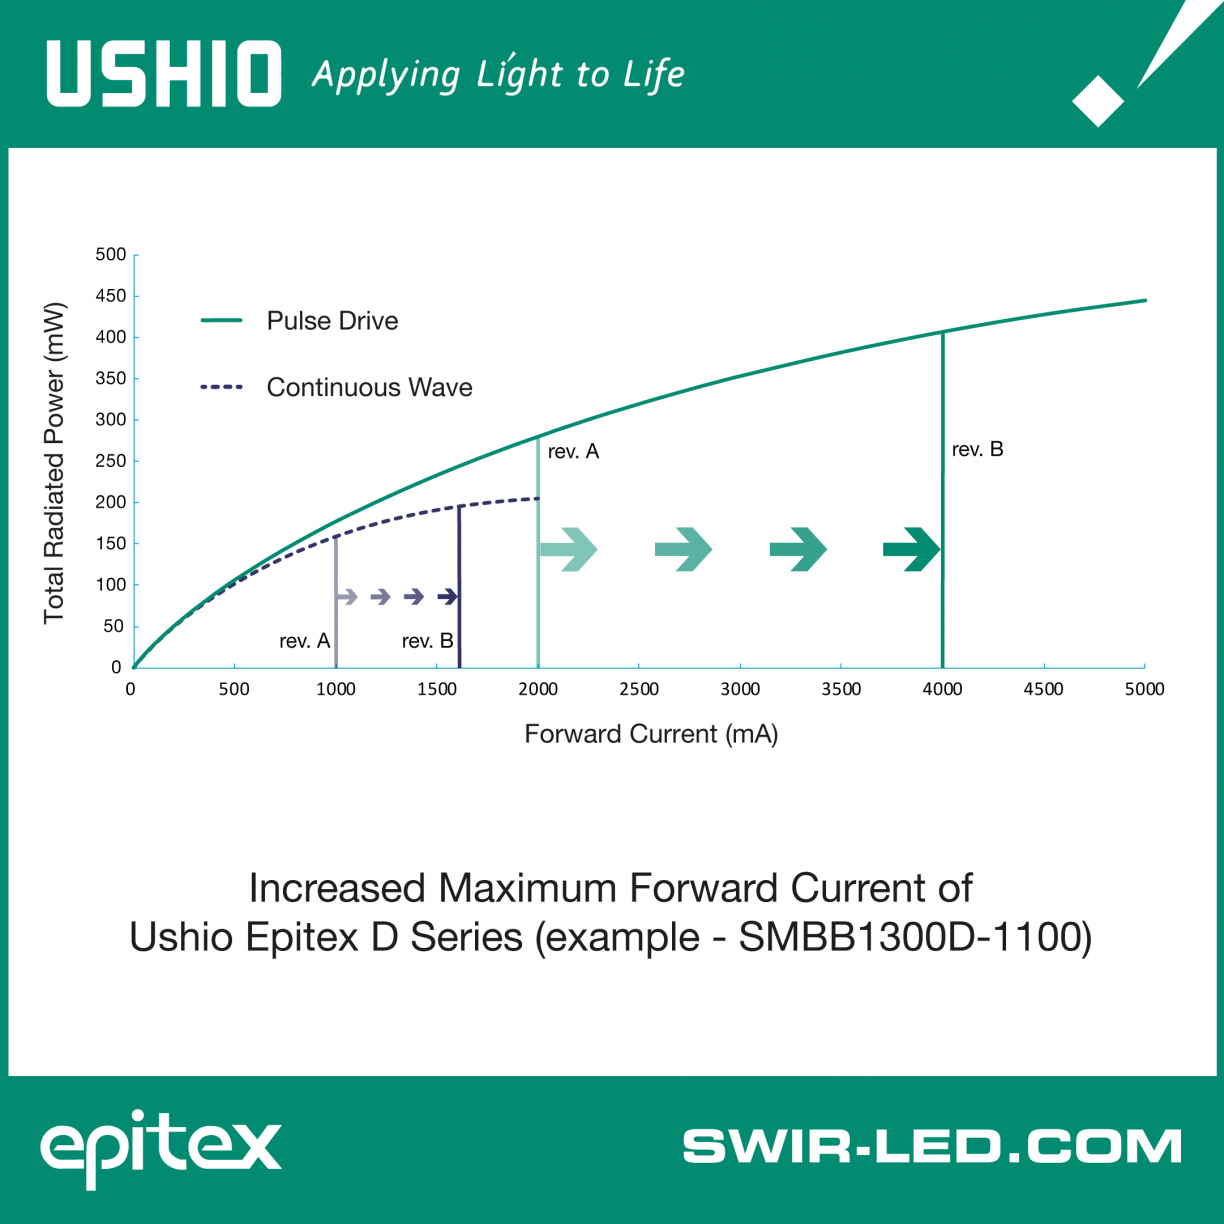 Increased maximum forward current of Ushio Epitex D Series